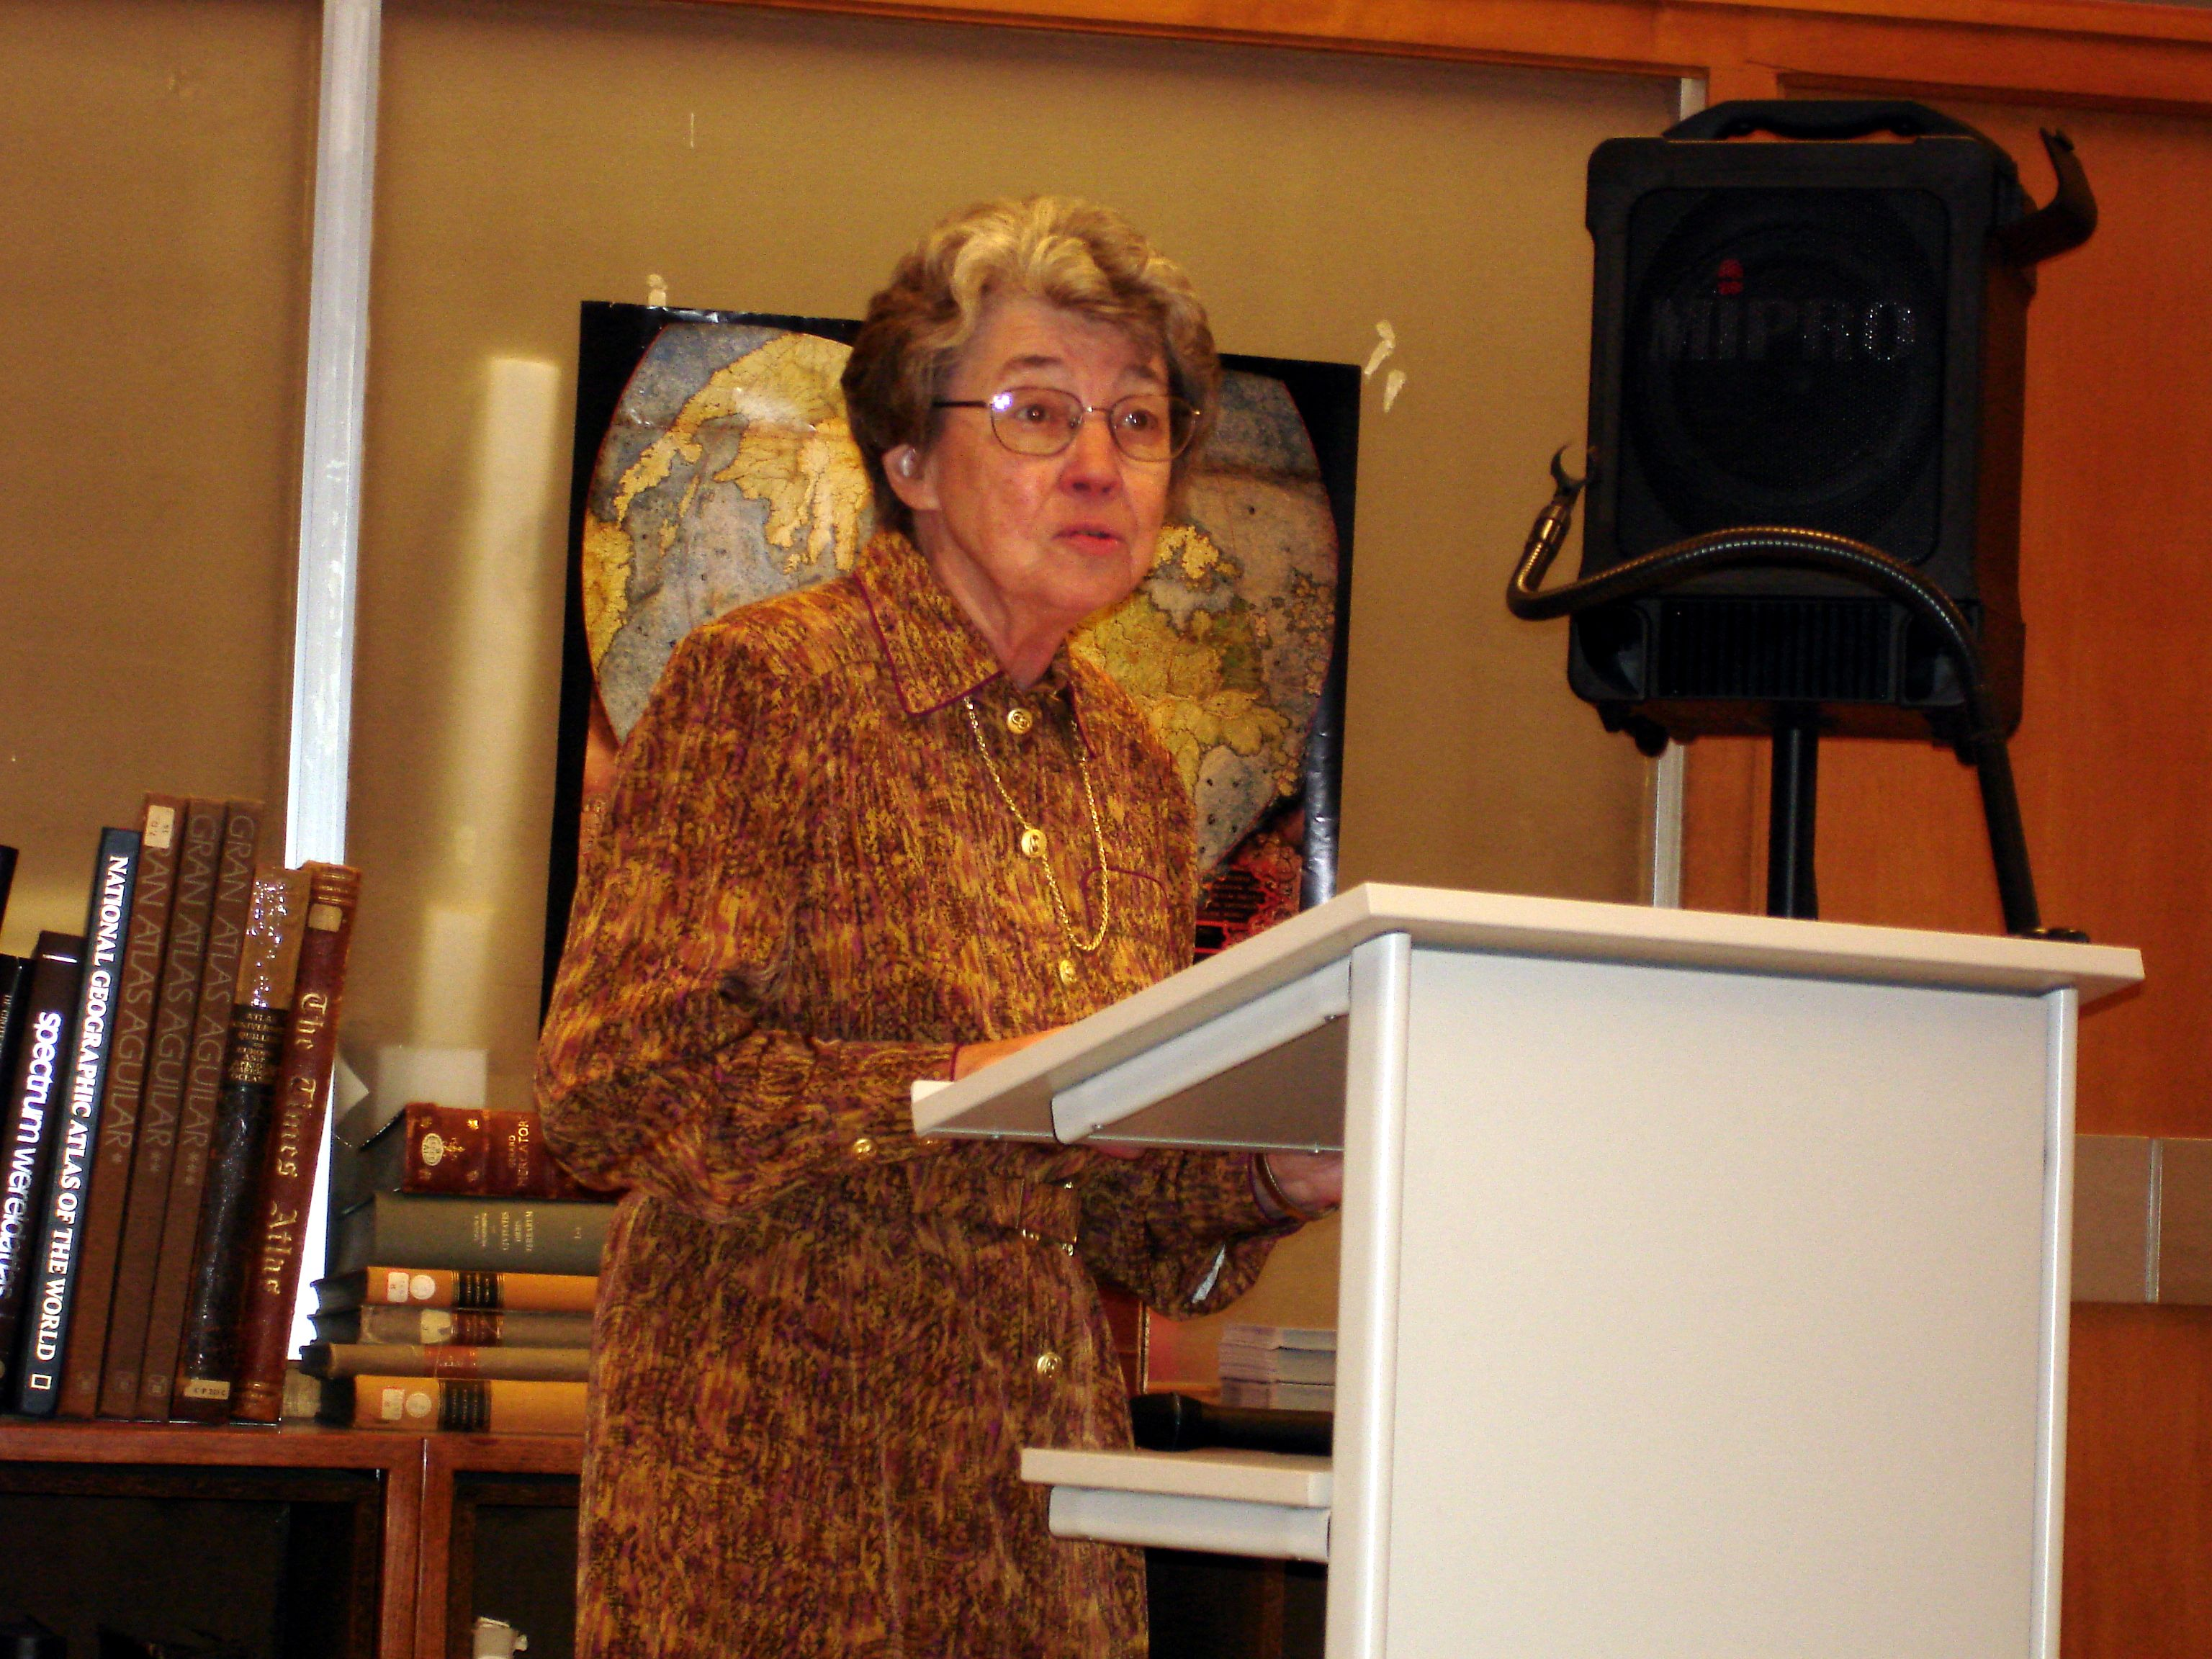 Lisette Danckaert at the KBR in October 2006